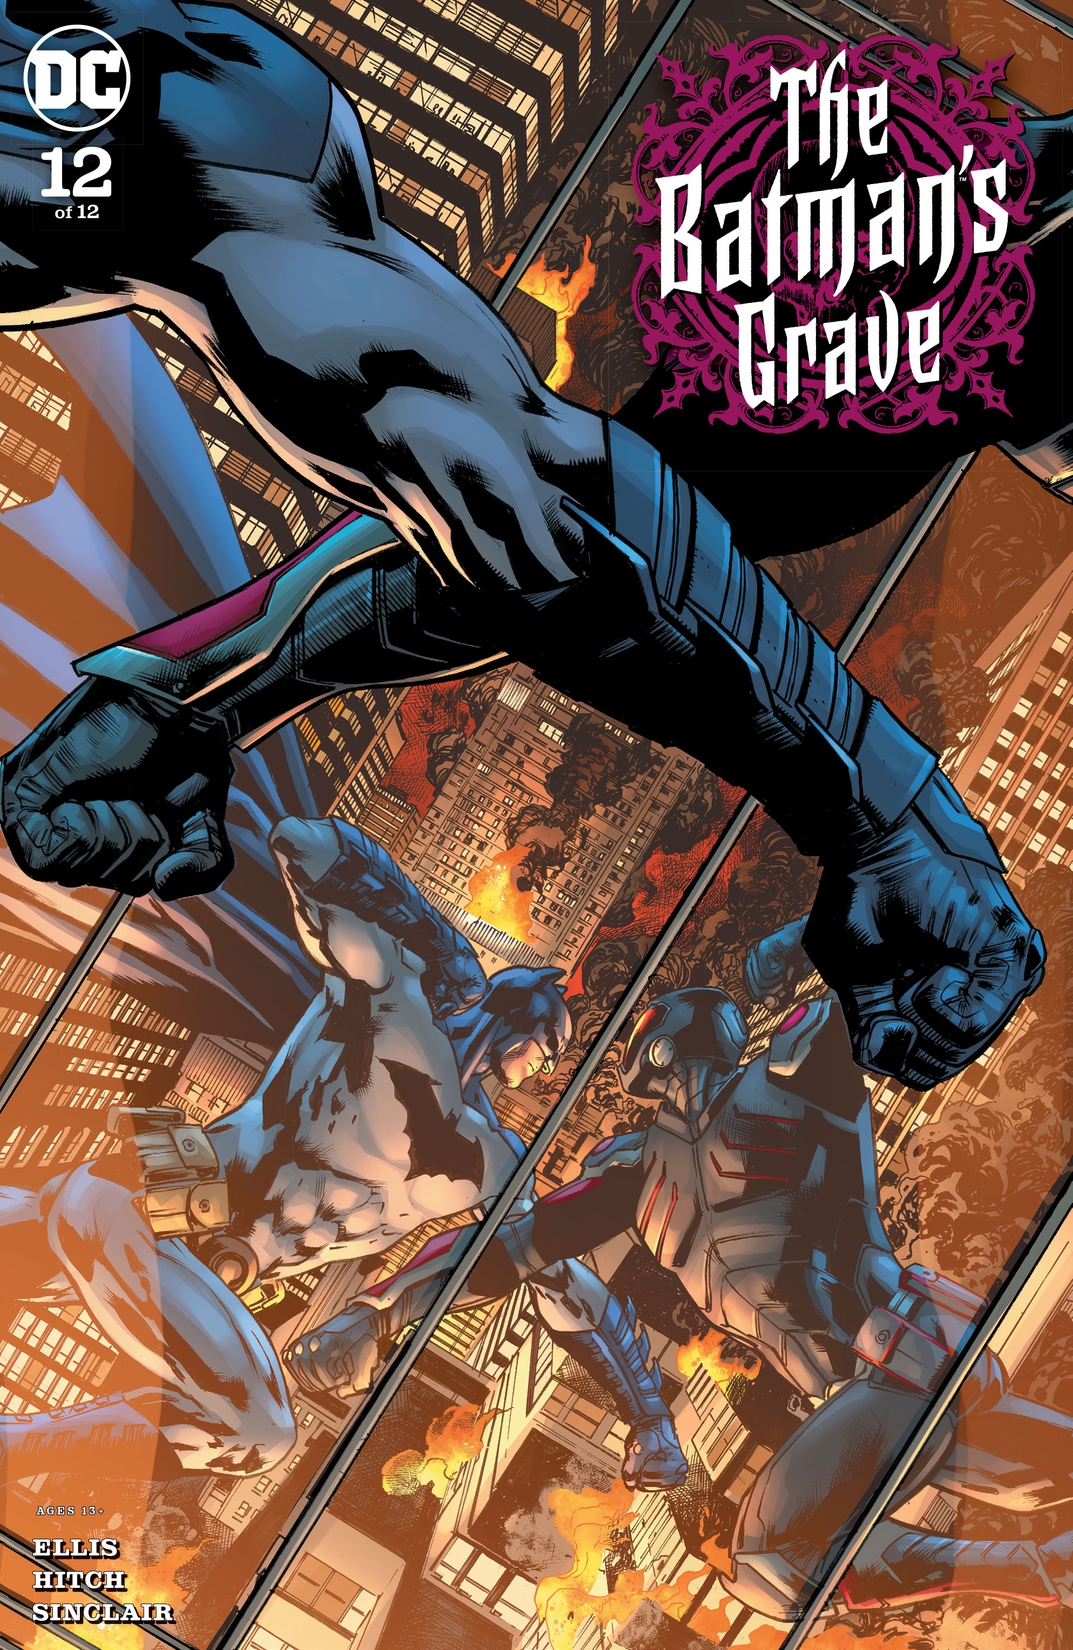 The Batman's Grave #12 preview images